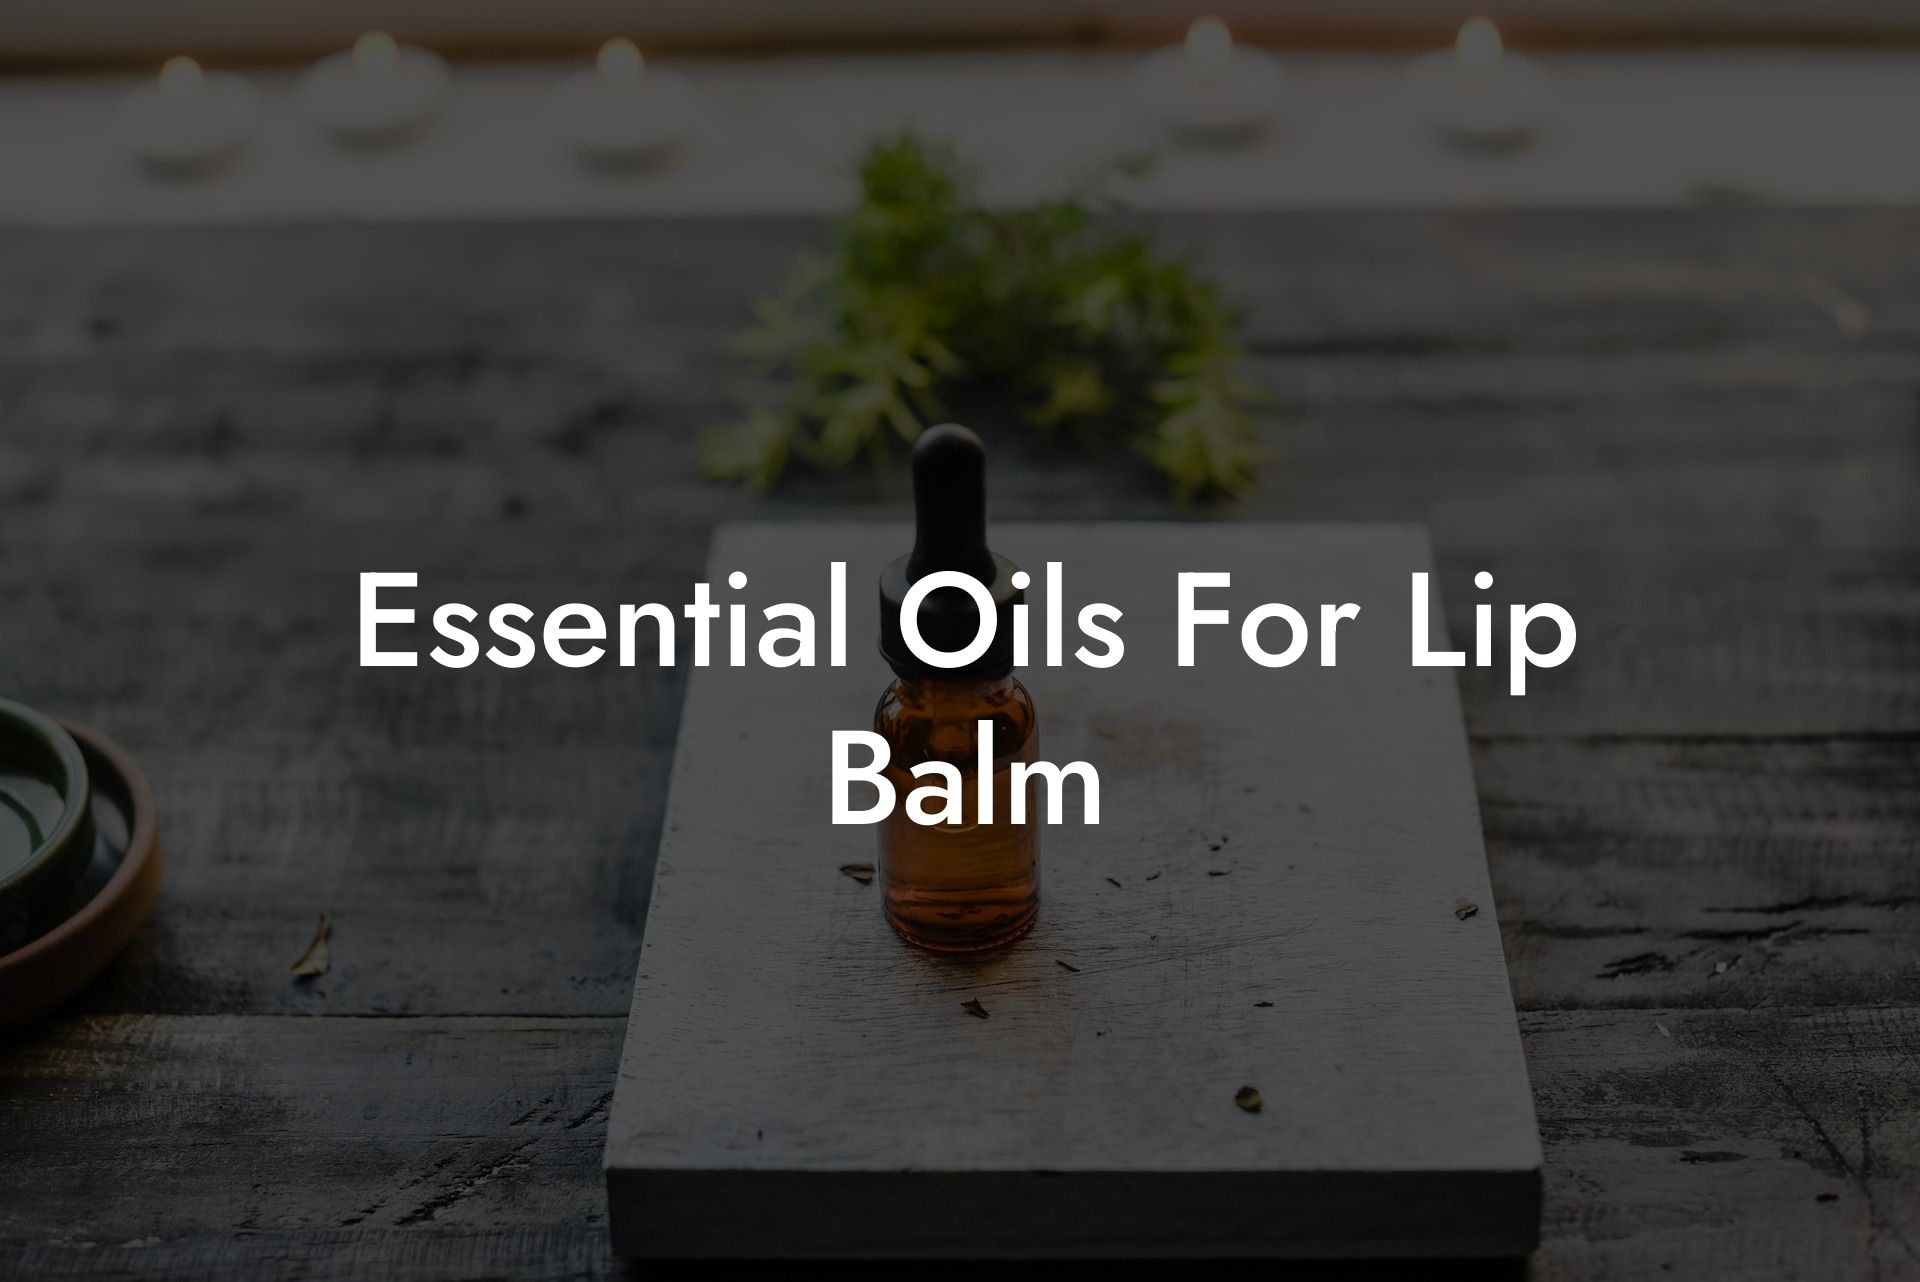 Essential Oils For Lip Balm